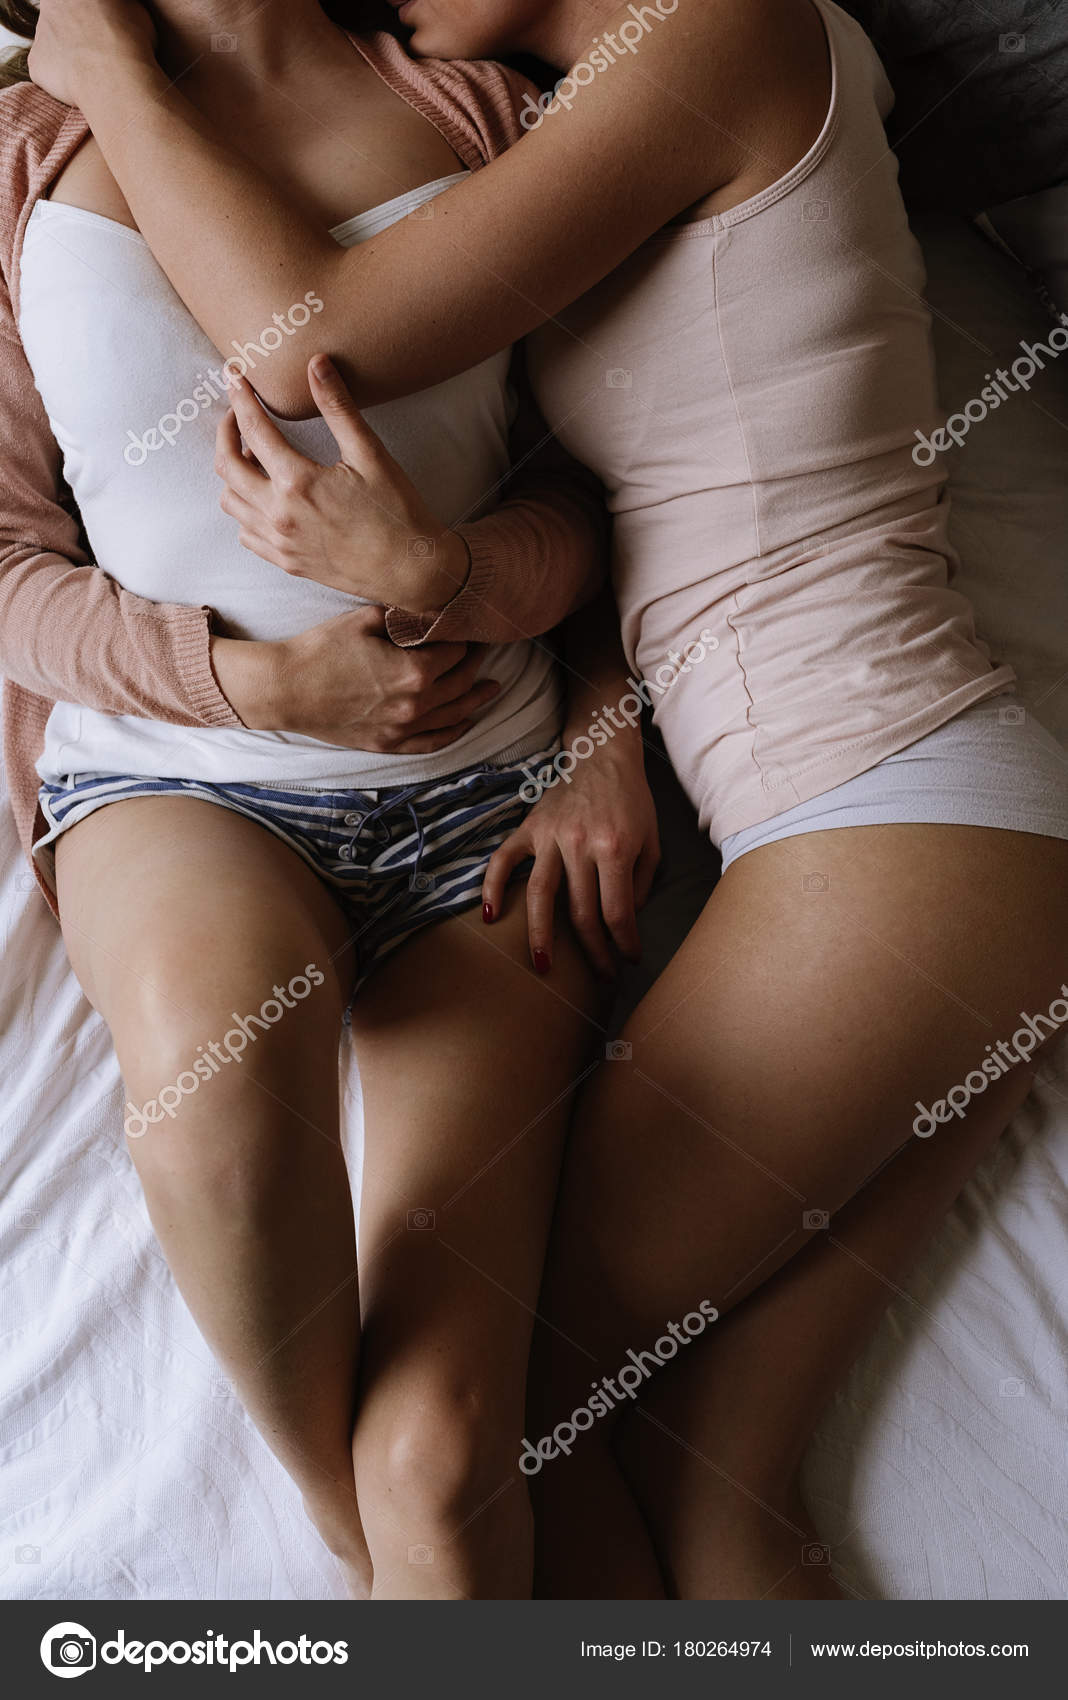 A gay couple in bed having sex Stockfotos, lizenzfreie A gay couple in bed having sex Bilder Depositphotos